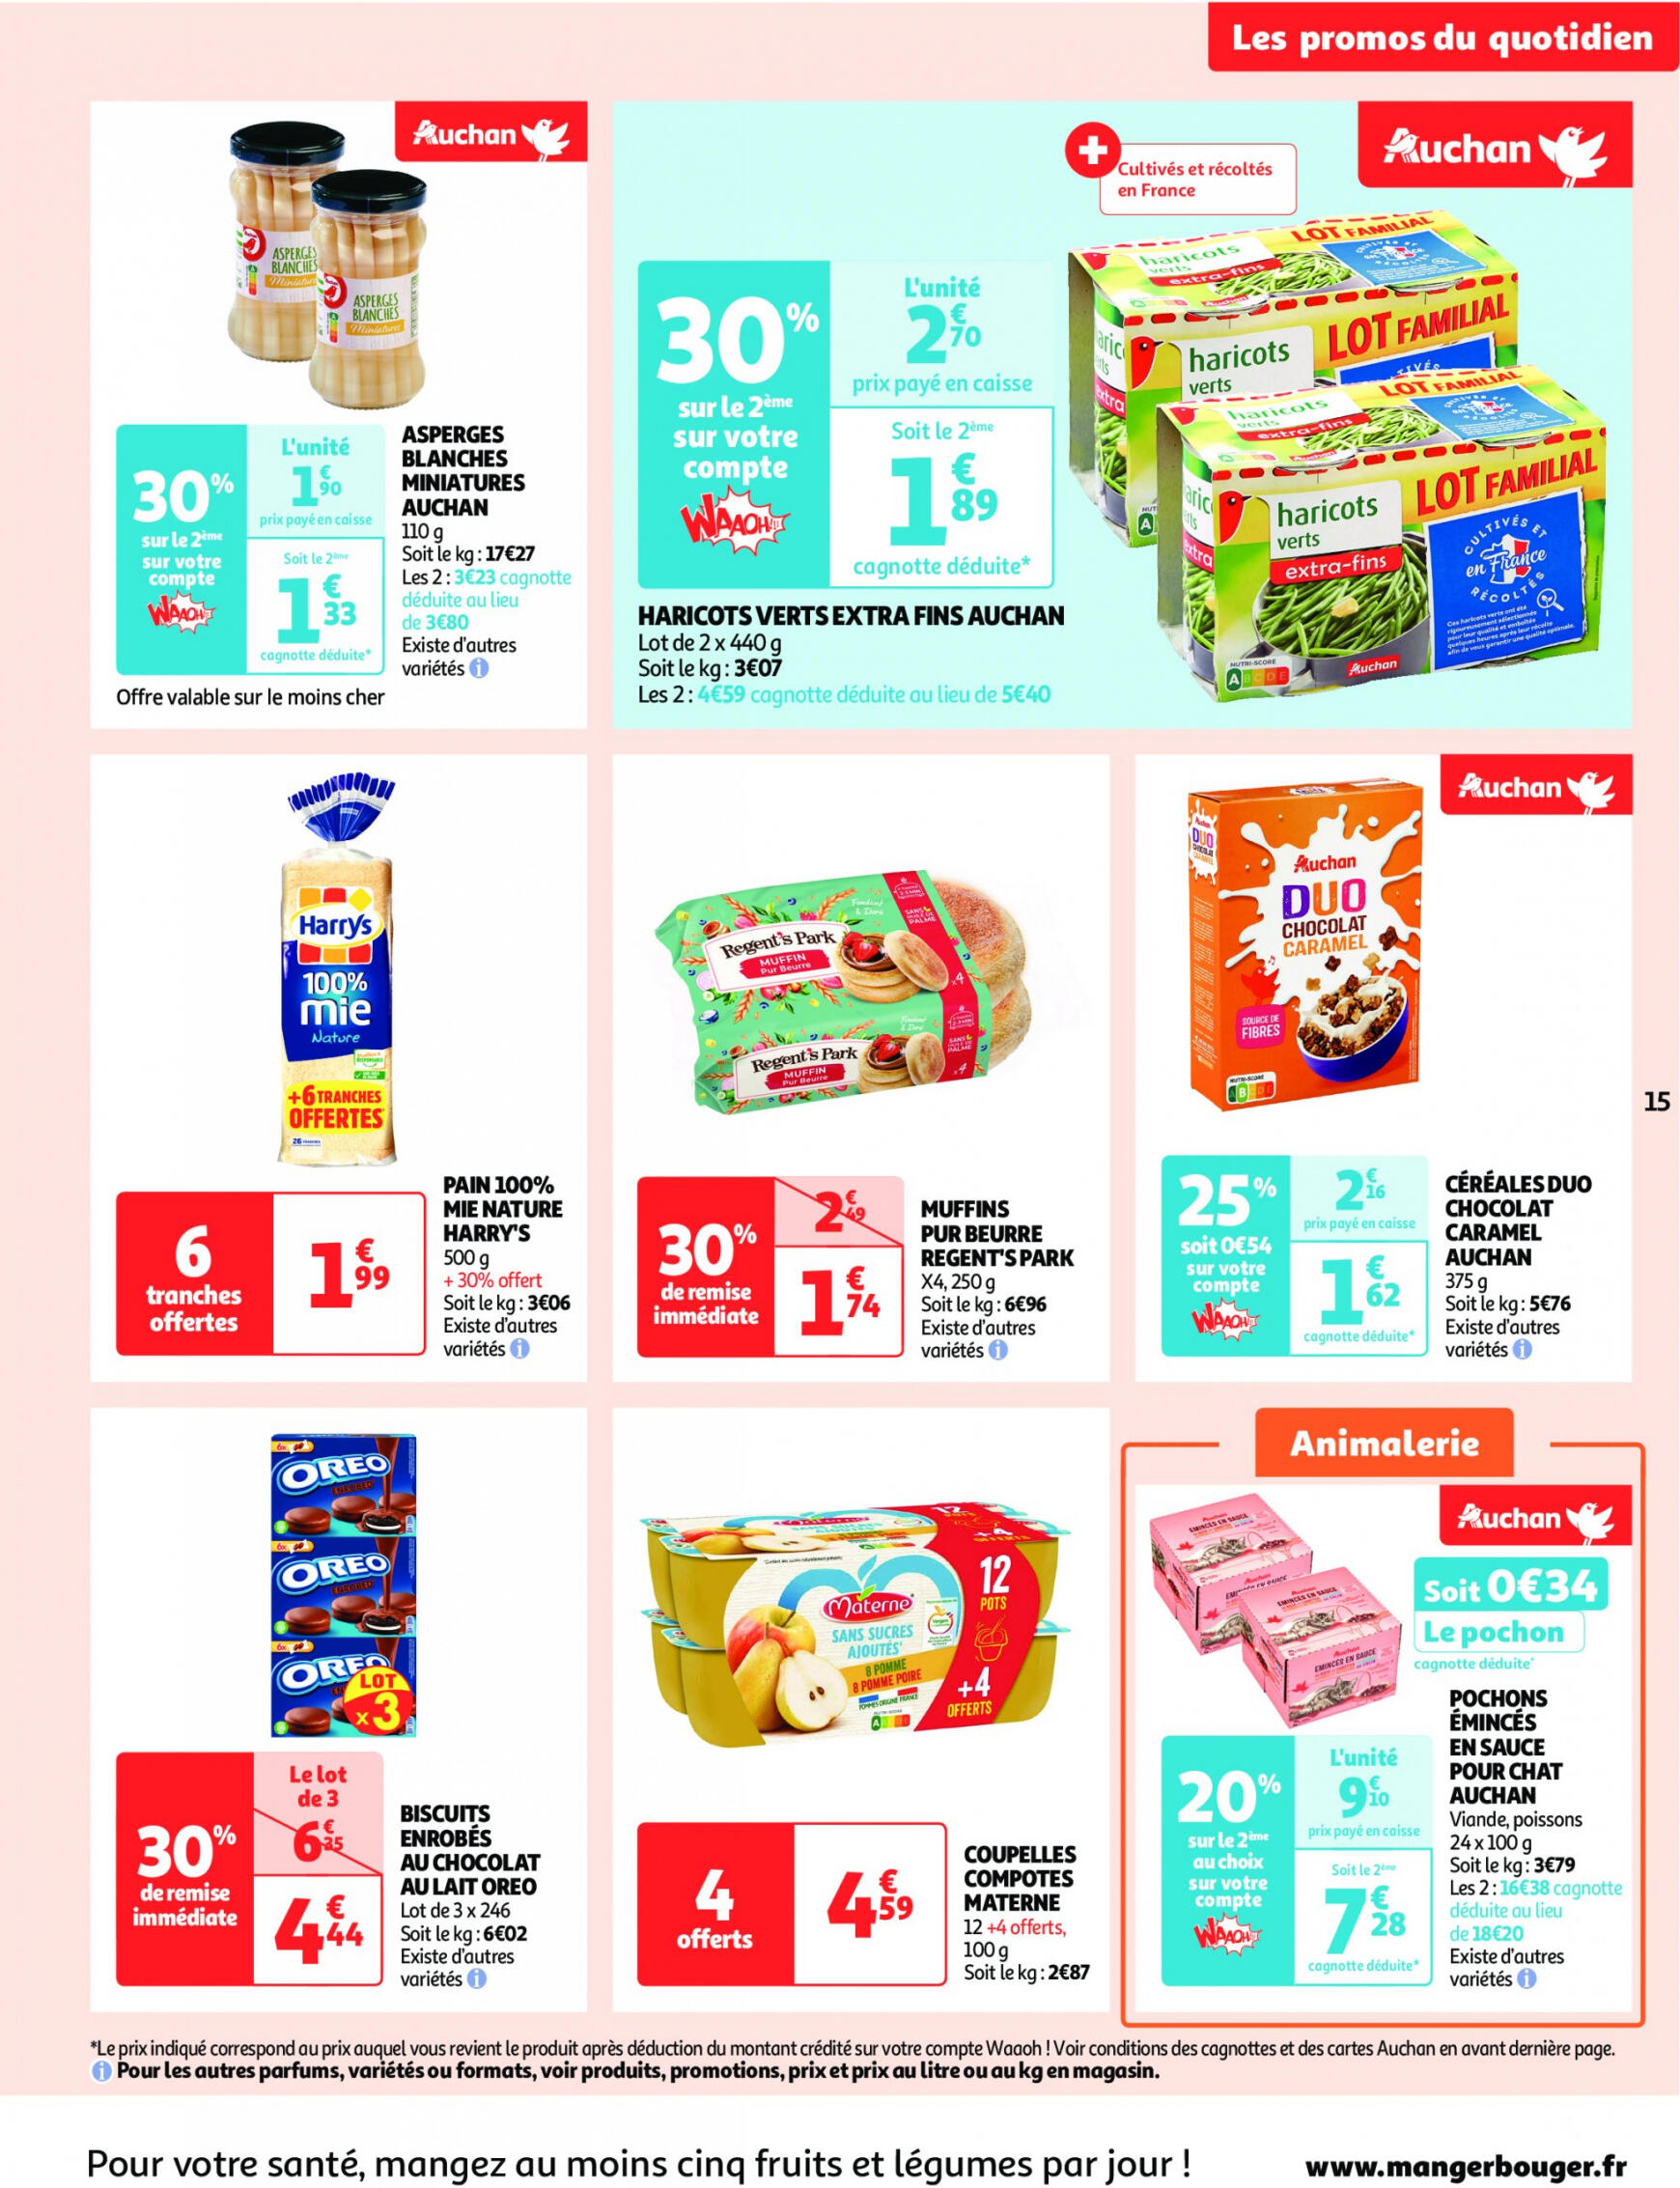 auchan - Auchan - On met le turbot sur les produits de la mer folder huidig 14.05. - 19.05. - page: 15